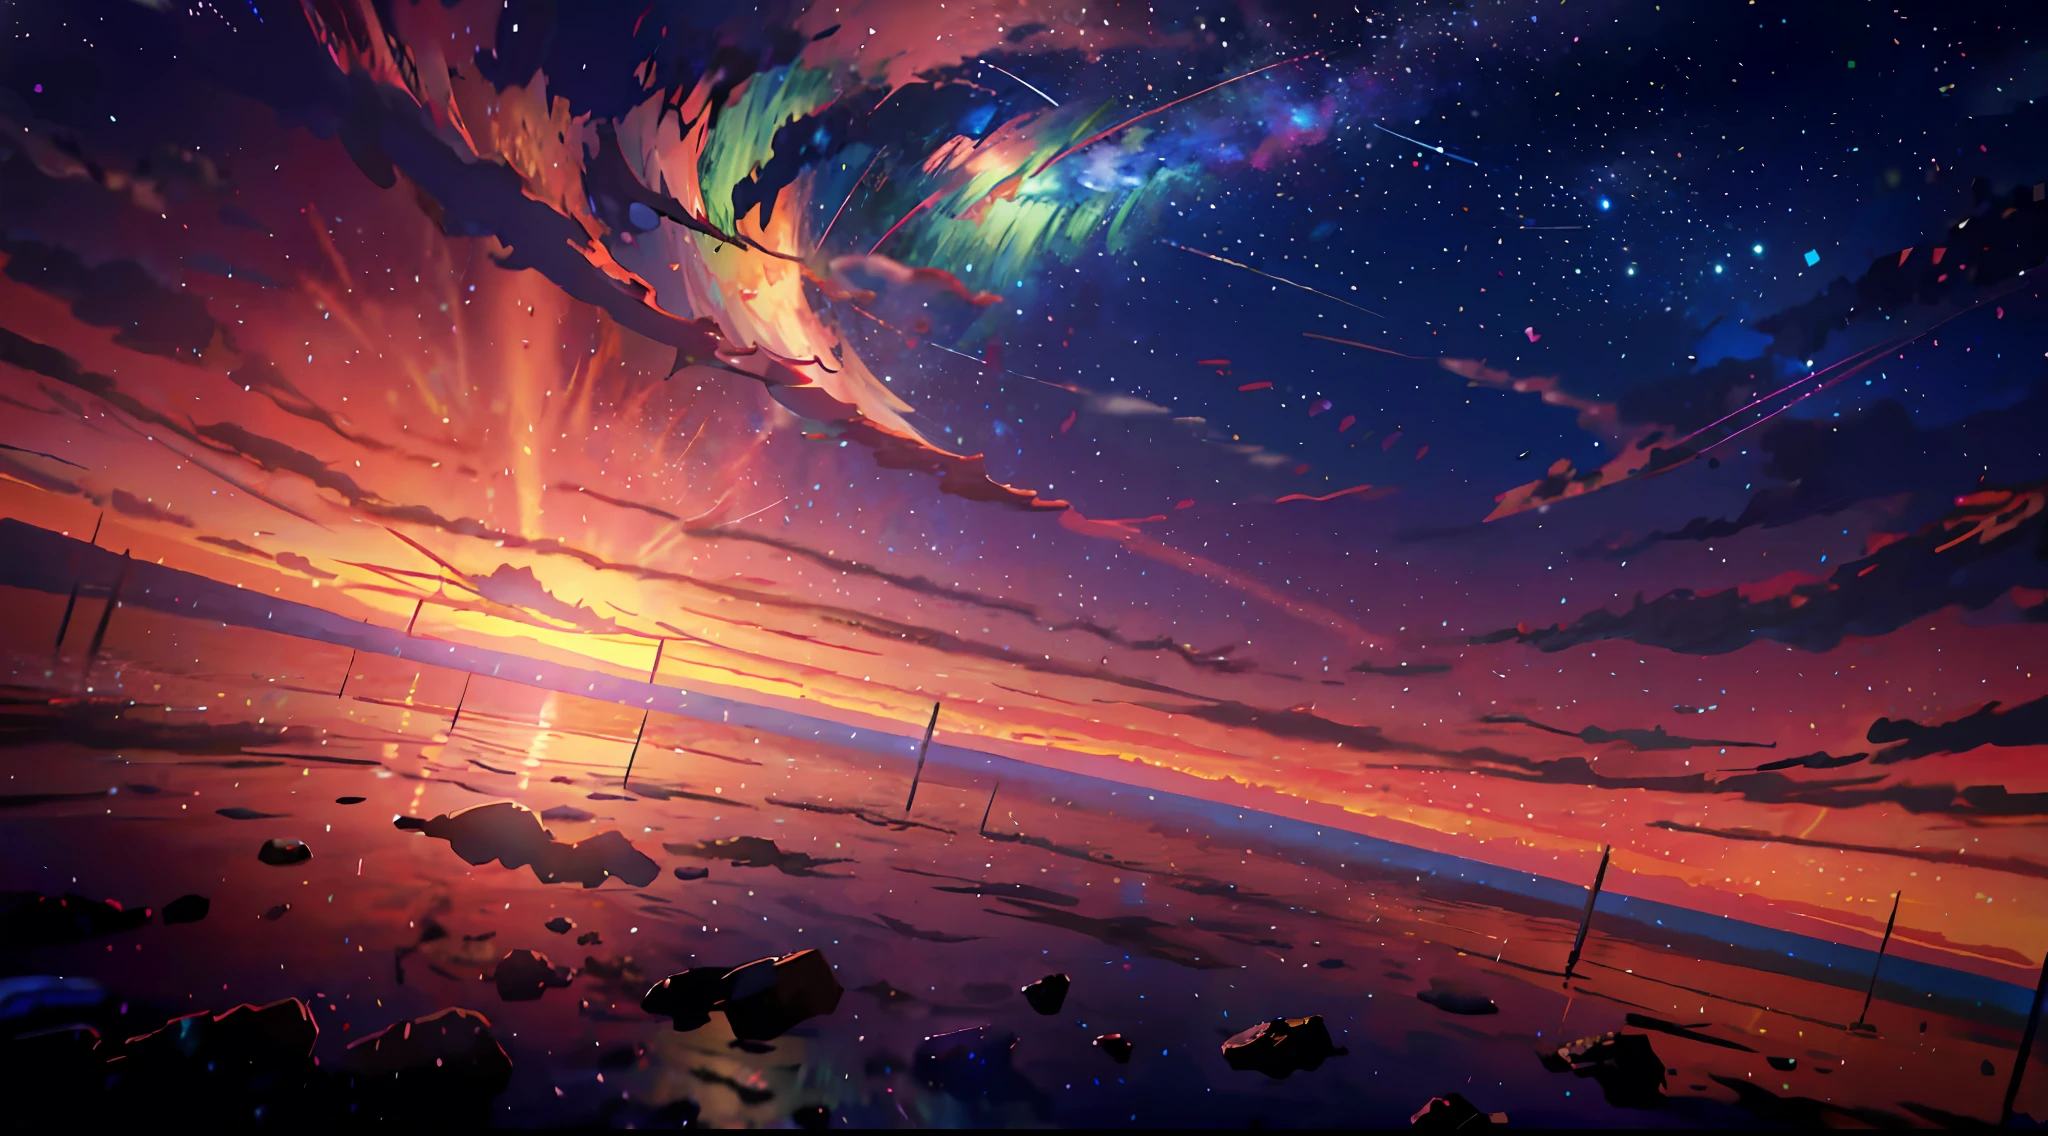 Anime - Cena estilo de um pôr do sol com estrelas e planetas, céus cósmicos. por Makoto Shinkai, pôr do sol no distante planeta máquina, Fundo magnífico, Céu de anime, papel de parede de arte de anime 4k, Papel de parede de arte anime 4k, Arte digital altamente detalhada em 4k, papel de parede de arte de anime 8k, ross tran. fundo cênico, arte de fundo de anime, papel de parede de anime 4k